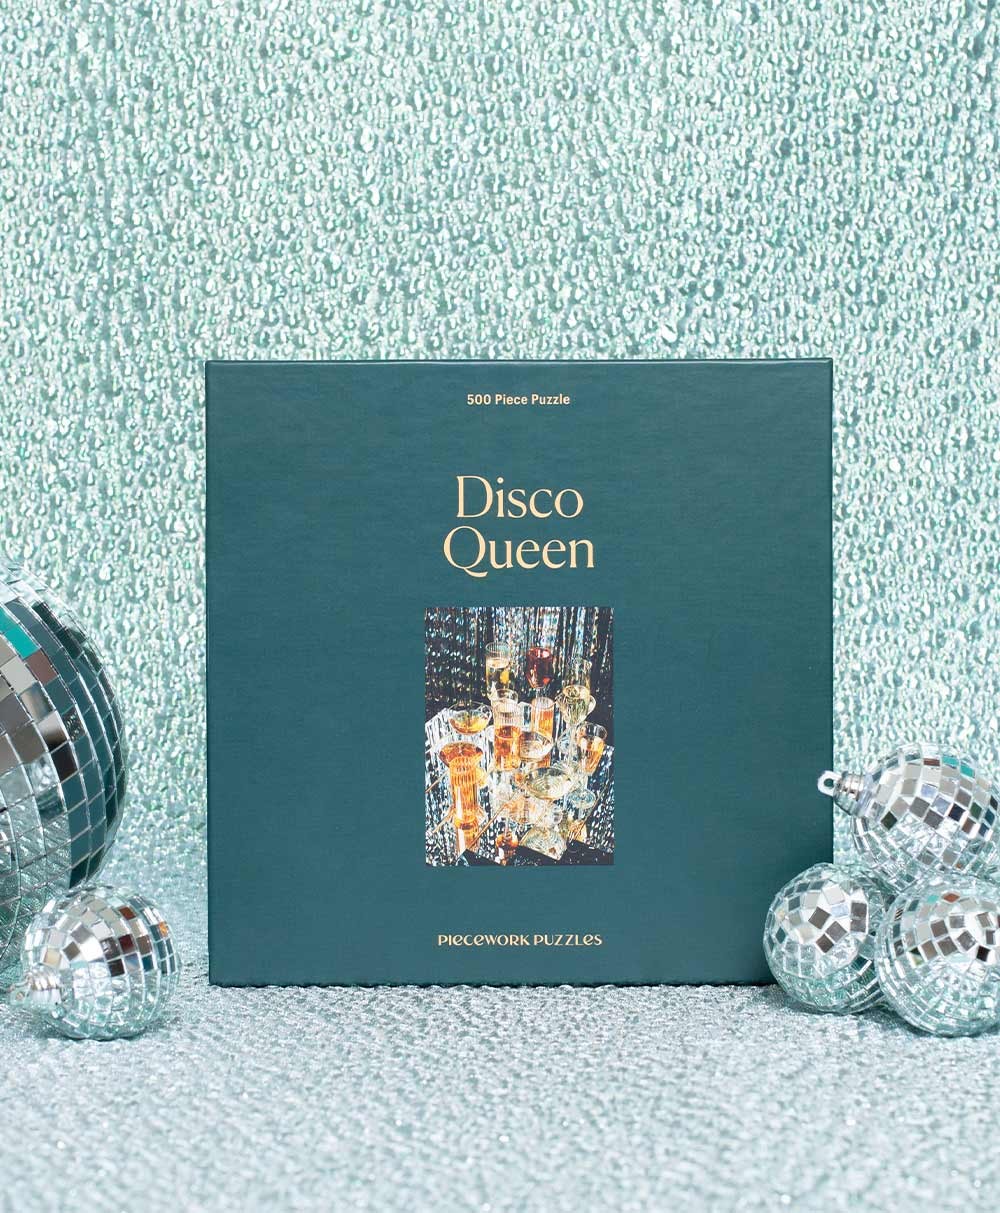 Moodbild des Puzzle Disco Queen von Piecework im RAUM concept store 